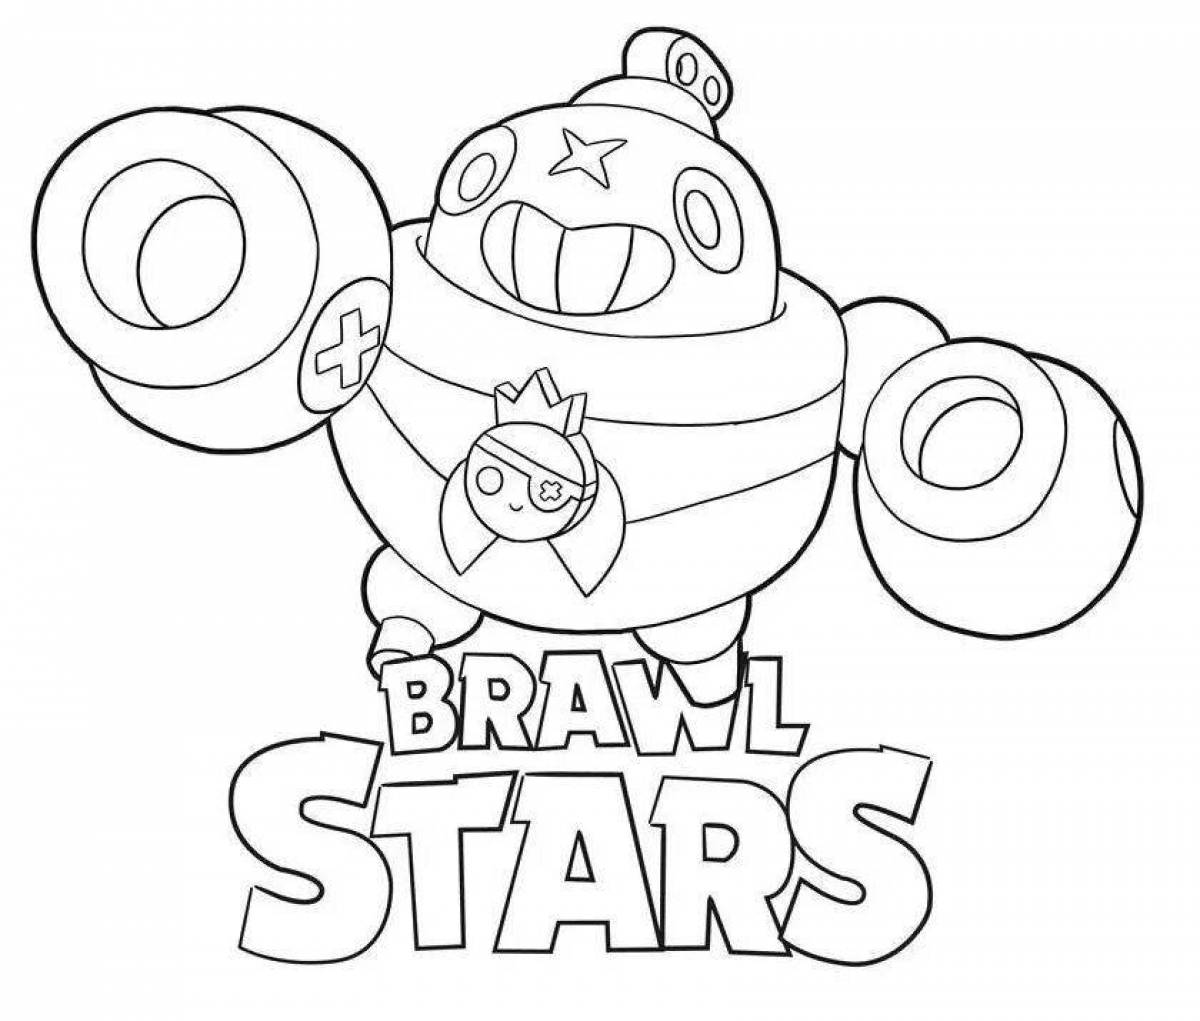 Bravo stars lu playful coloring page